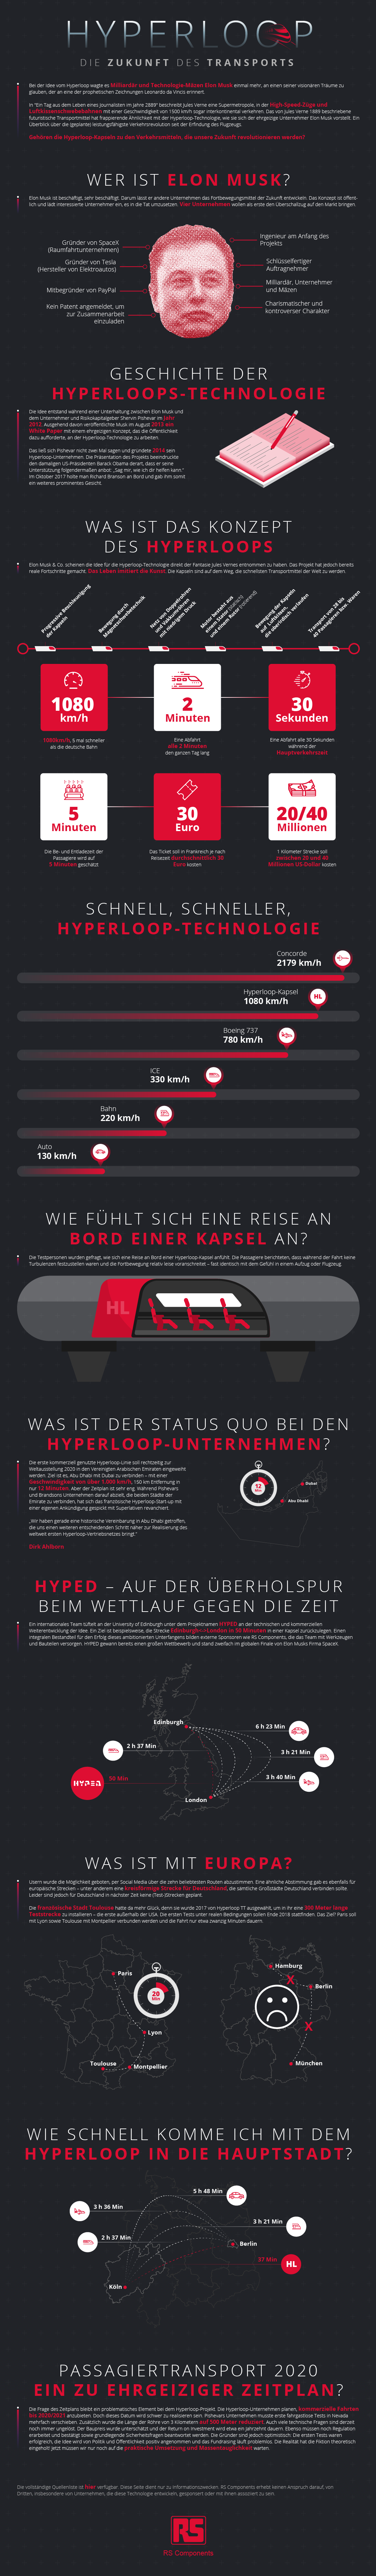 Hyperloop – Die Zukunft des Transports?